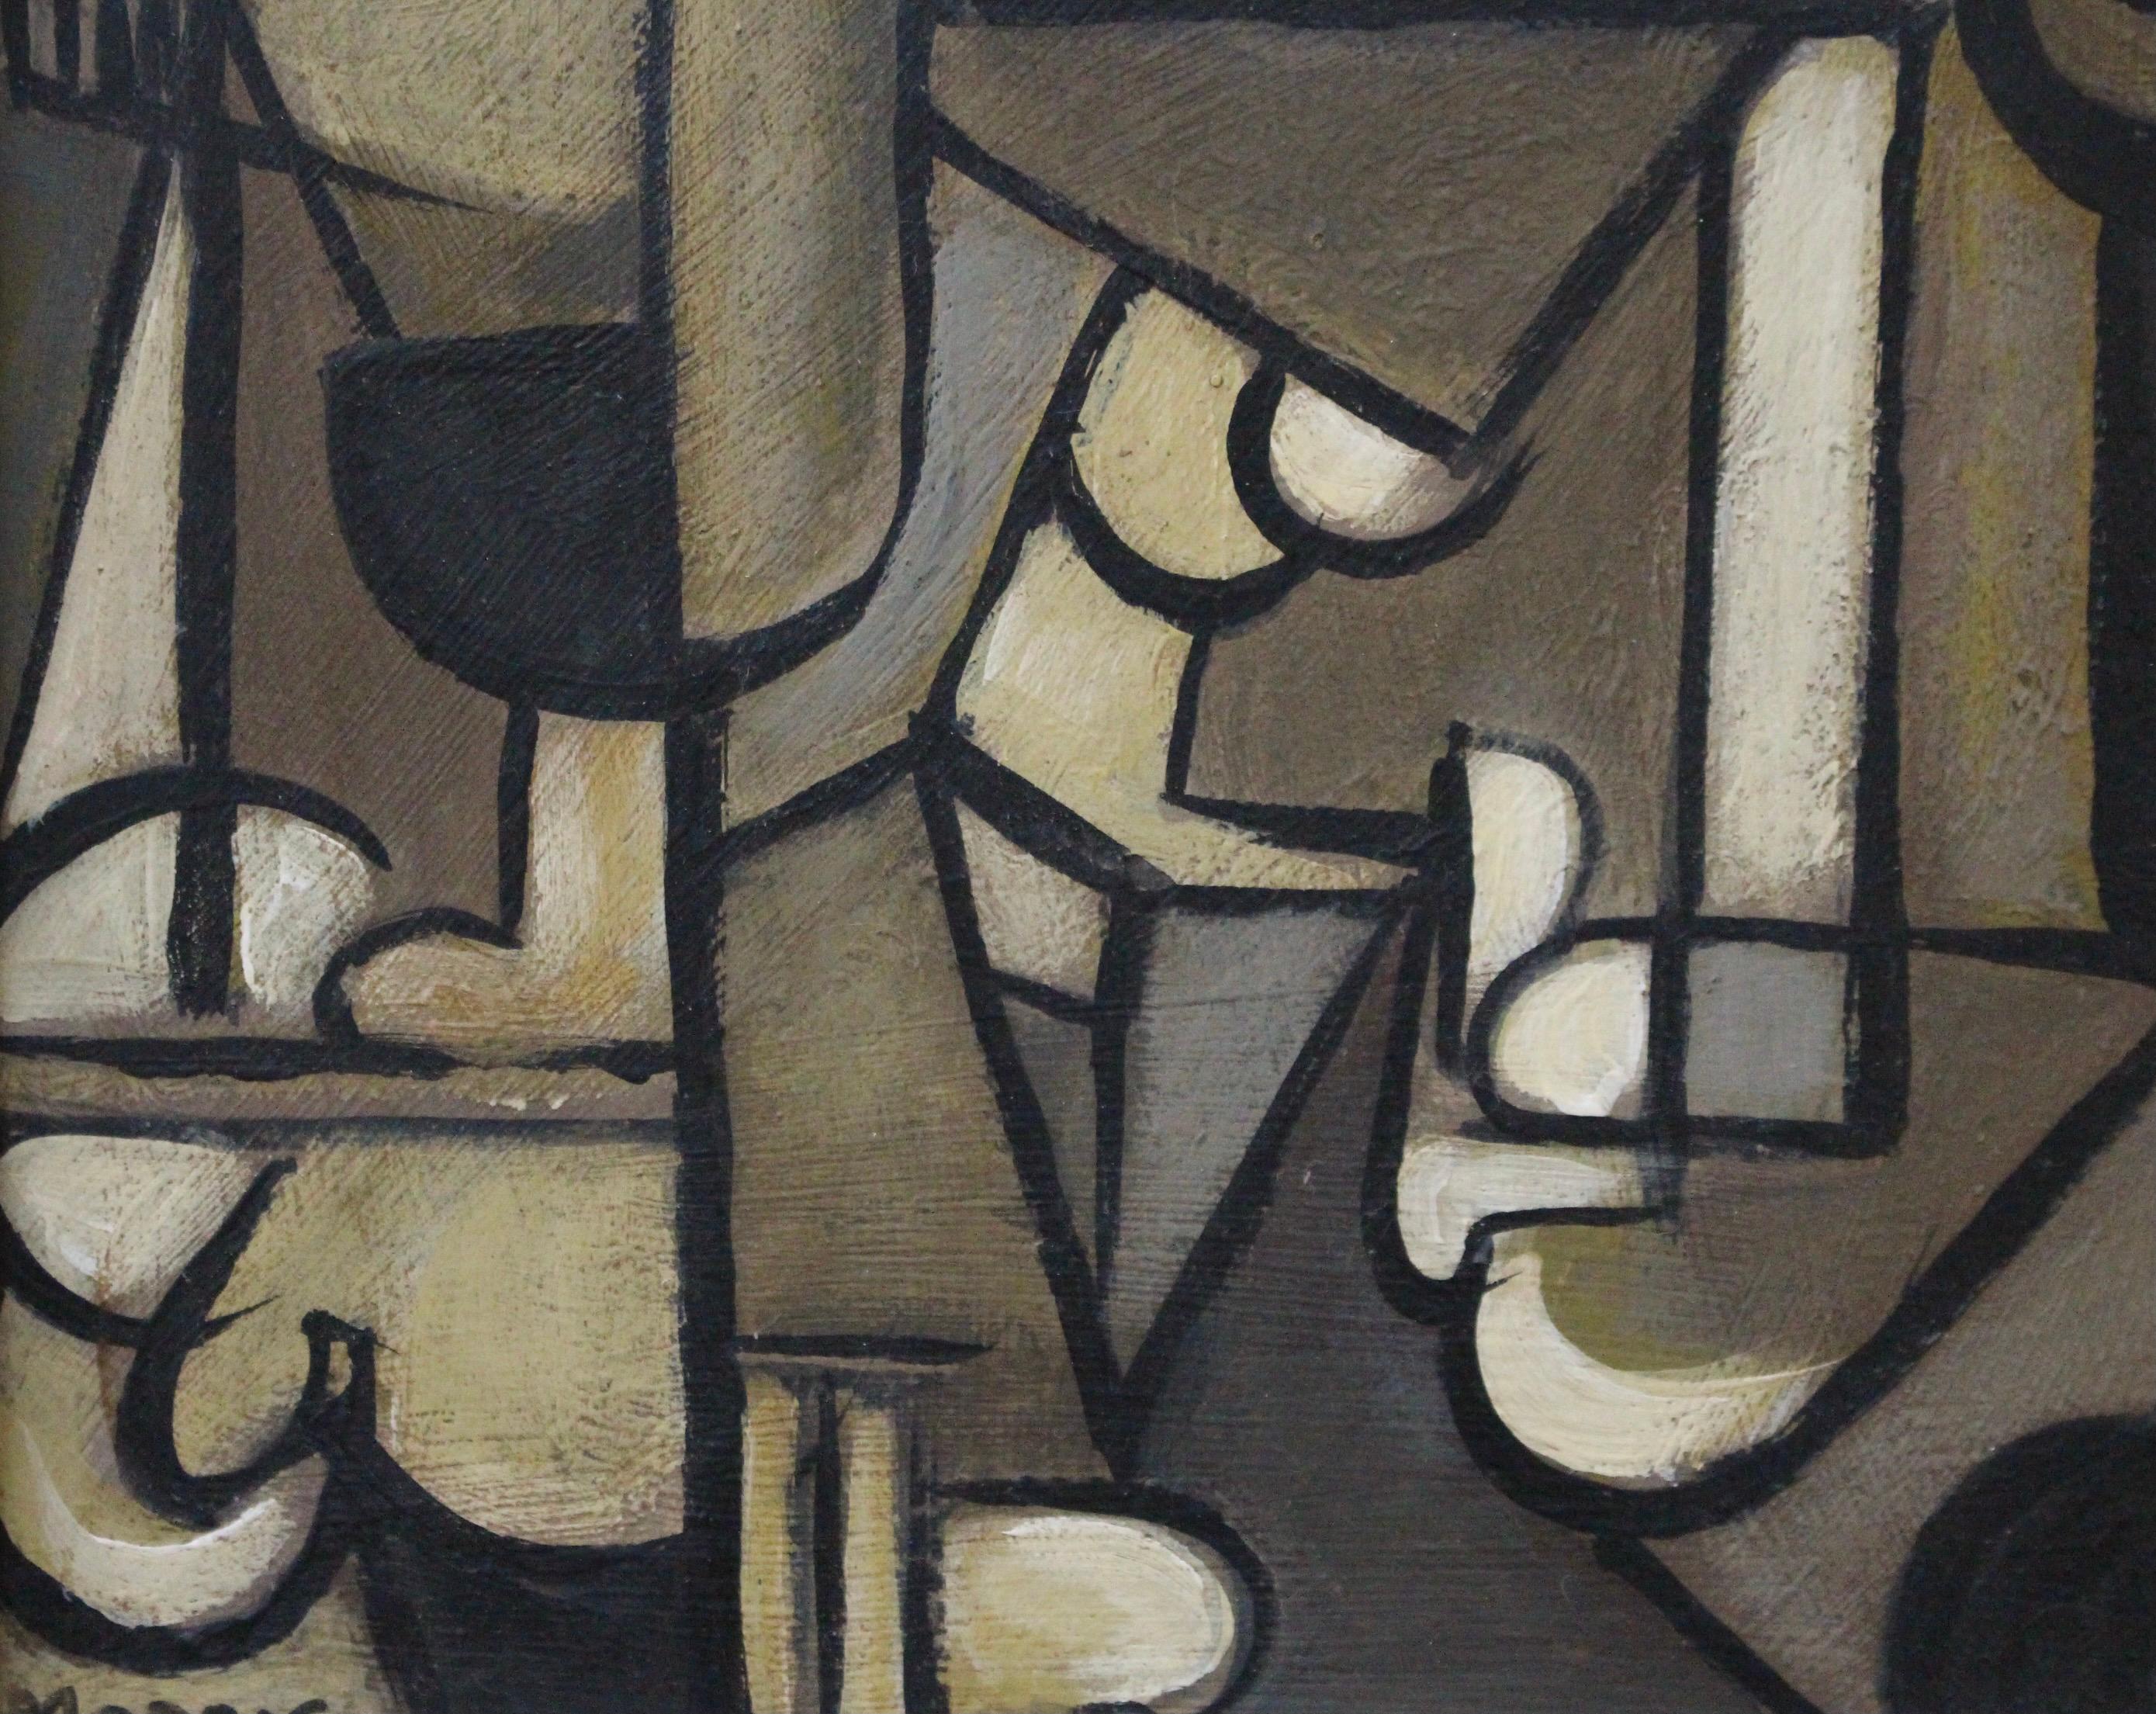 'Arrangement in Cubism' School of Berlin 2